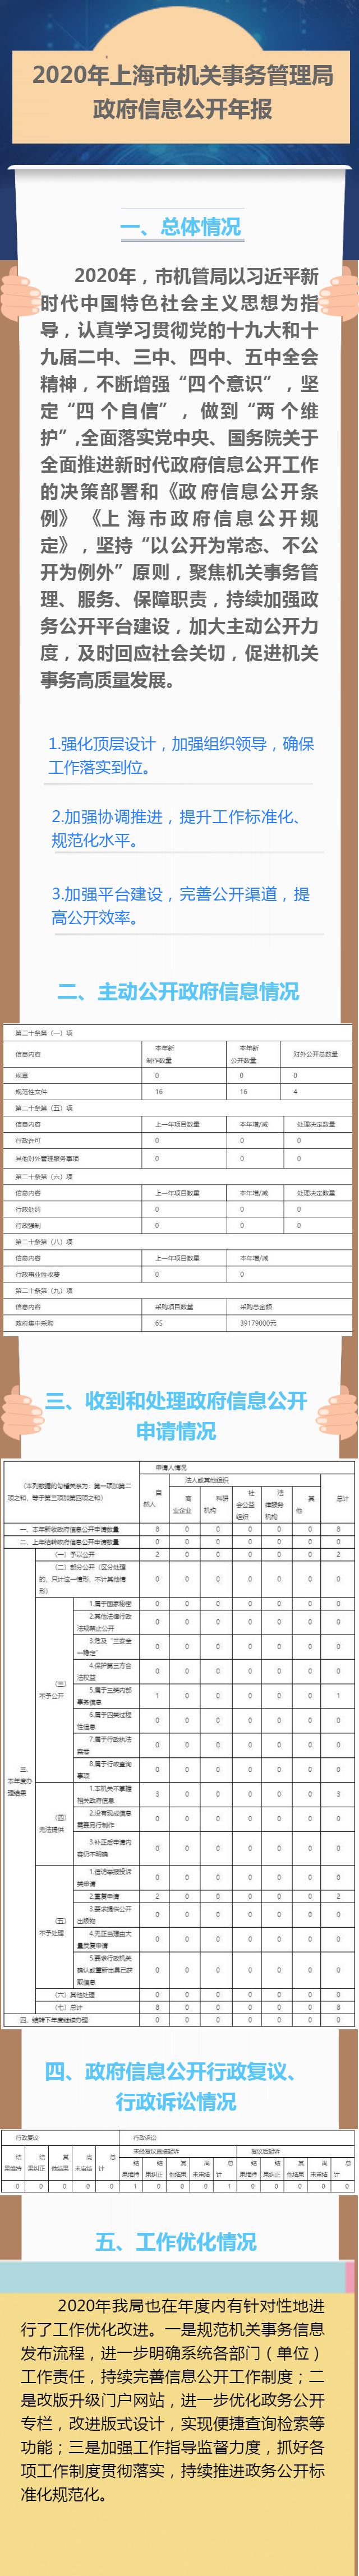 一图读懂2020年上海市机关事务管理局政府信息公开年报.png